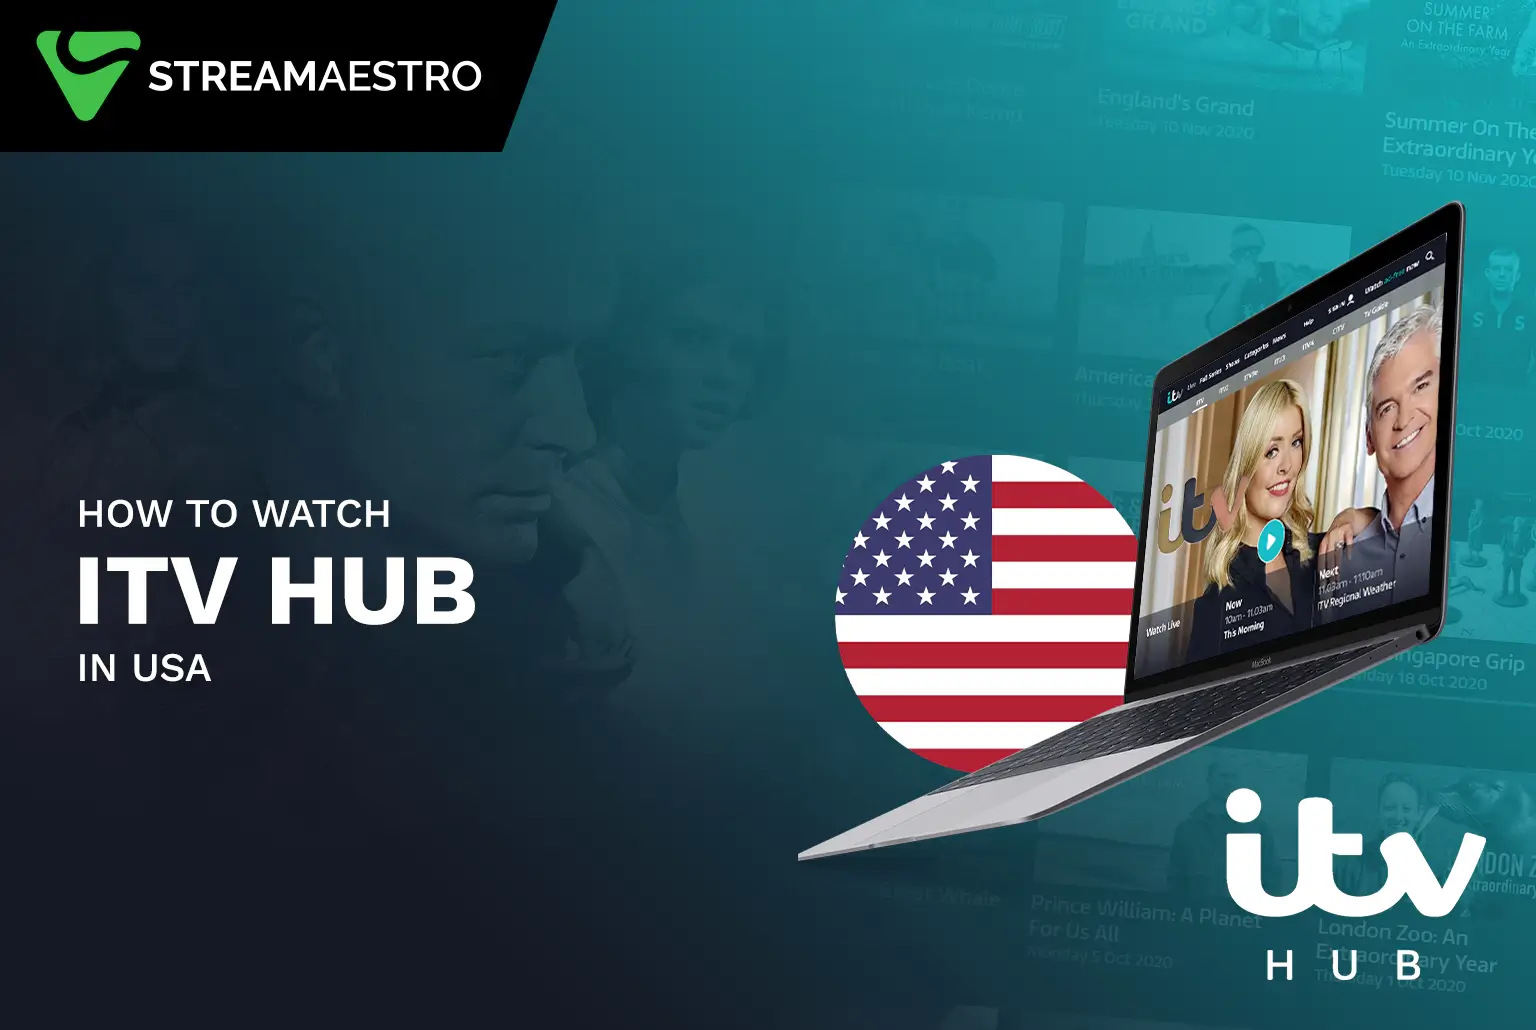 Watch ITV Hub in USA